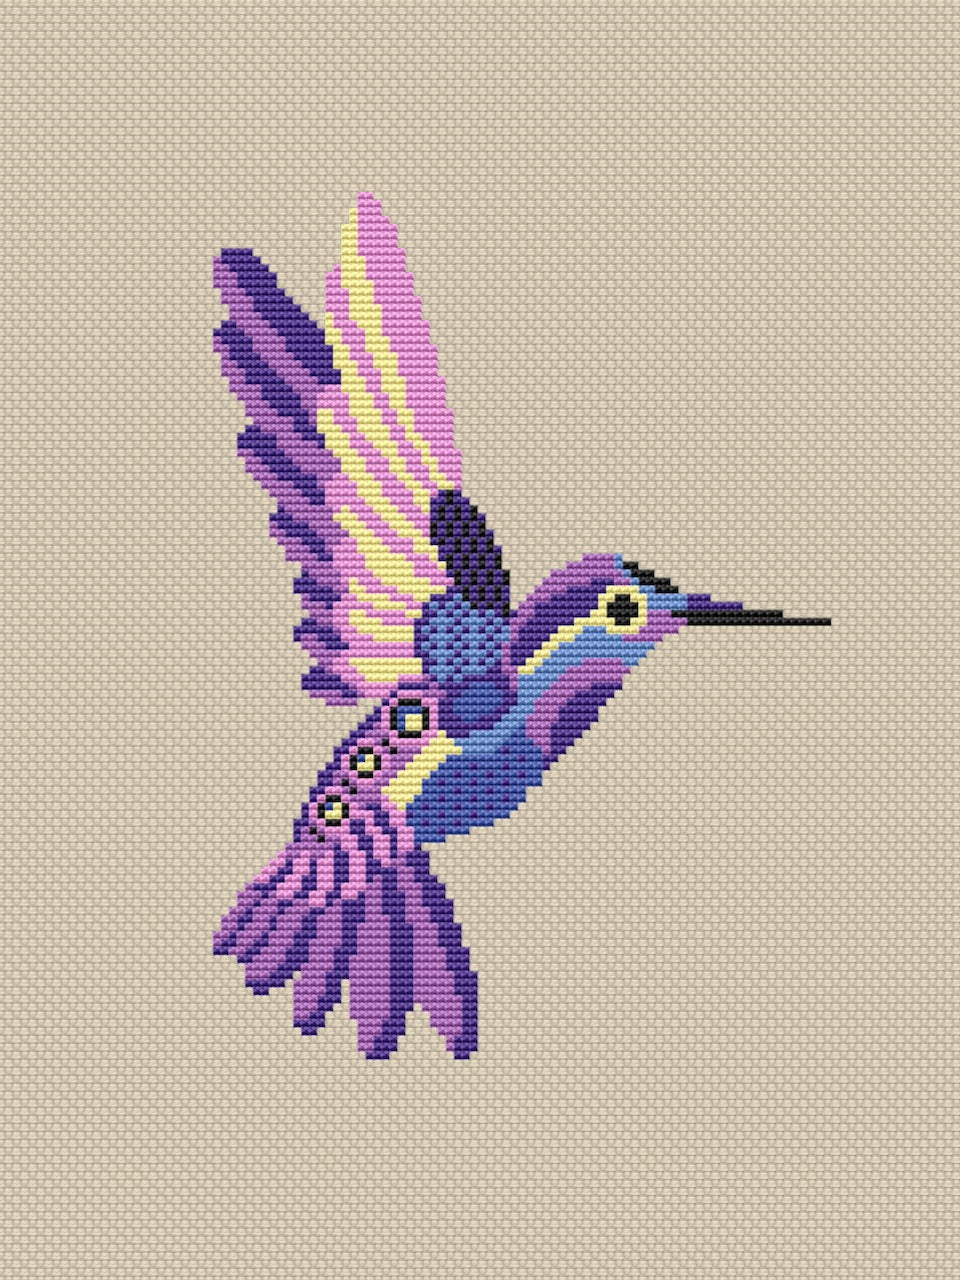 Hummingbird cross stitch pattern